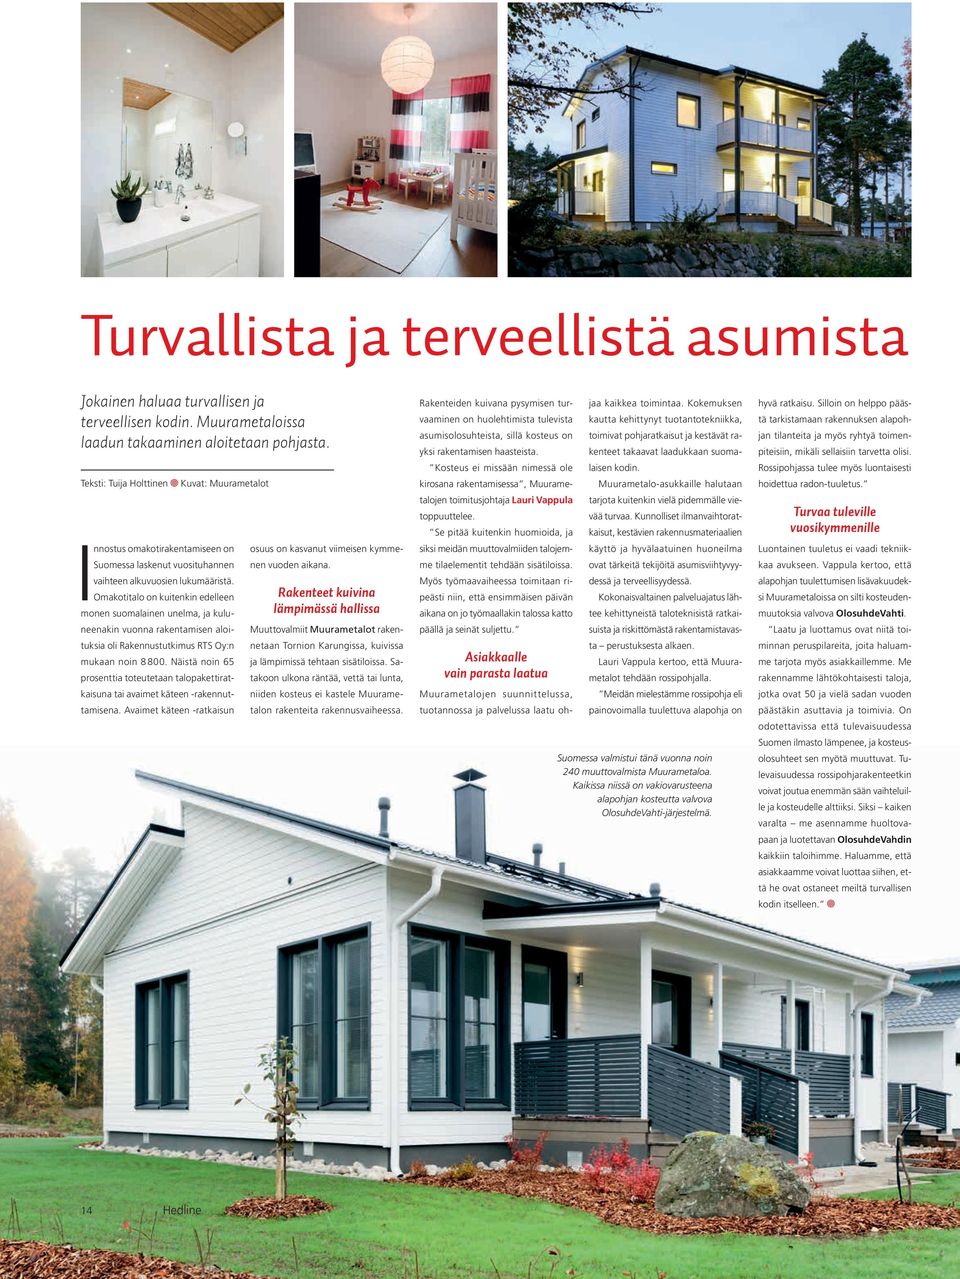 Omakotitalo on kuitenkin edelleen monen suomalainen unelma, ja kuluneenakin vuonna rakentamisen aloituksia oli Rakennustutkimus RTS Oy:n mukaan noin 8 800.